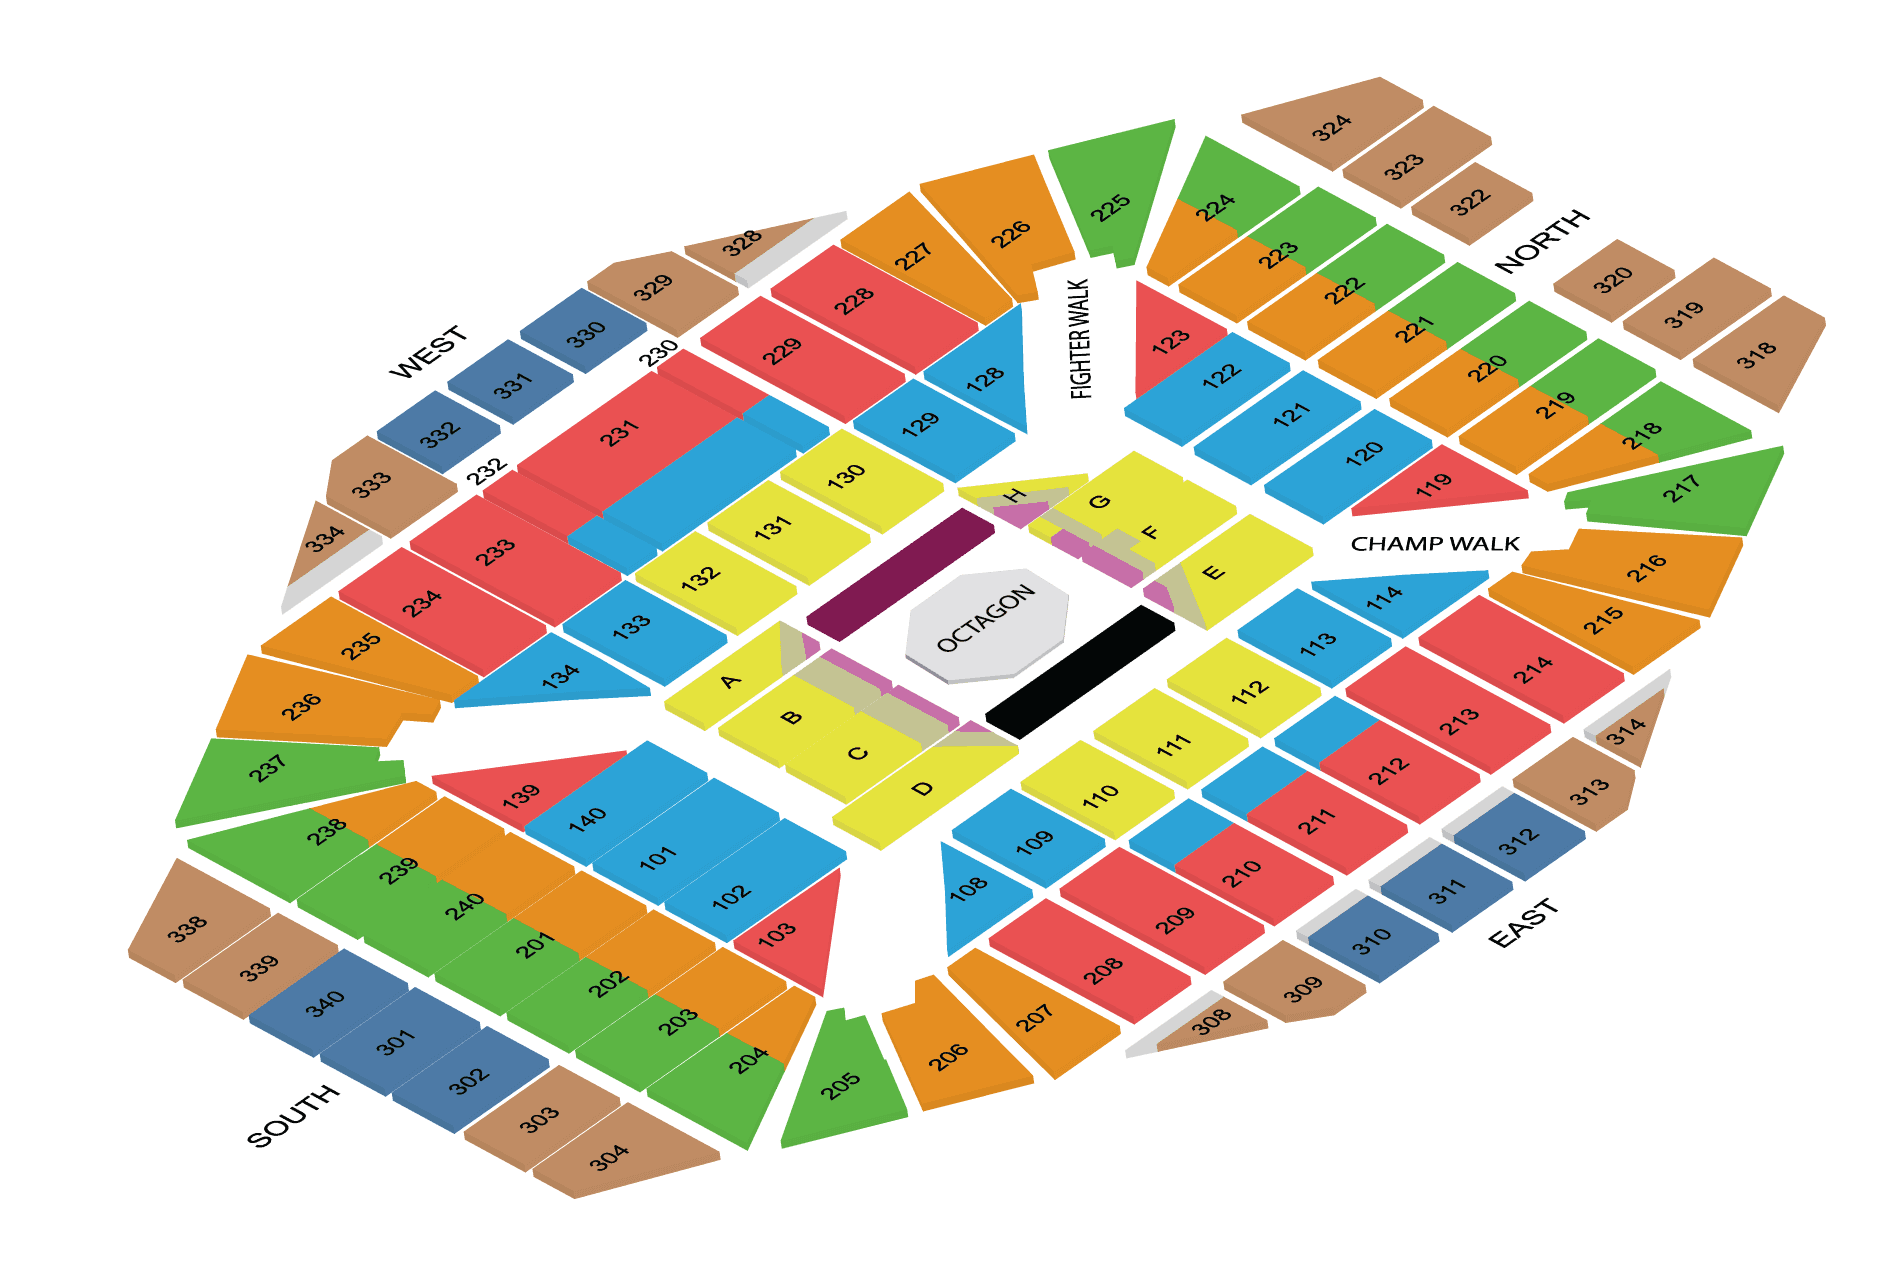 National Stadium Singapore Seating Plan Rows